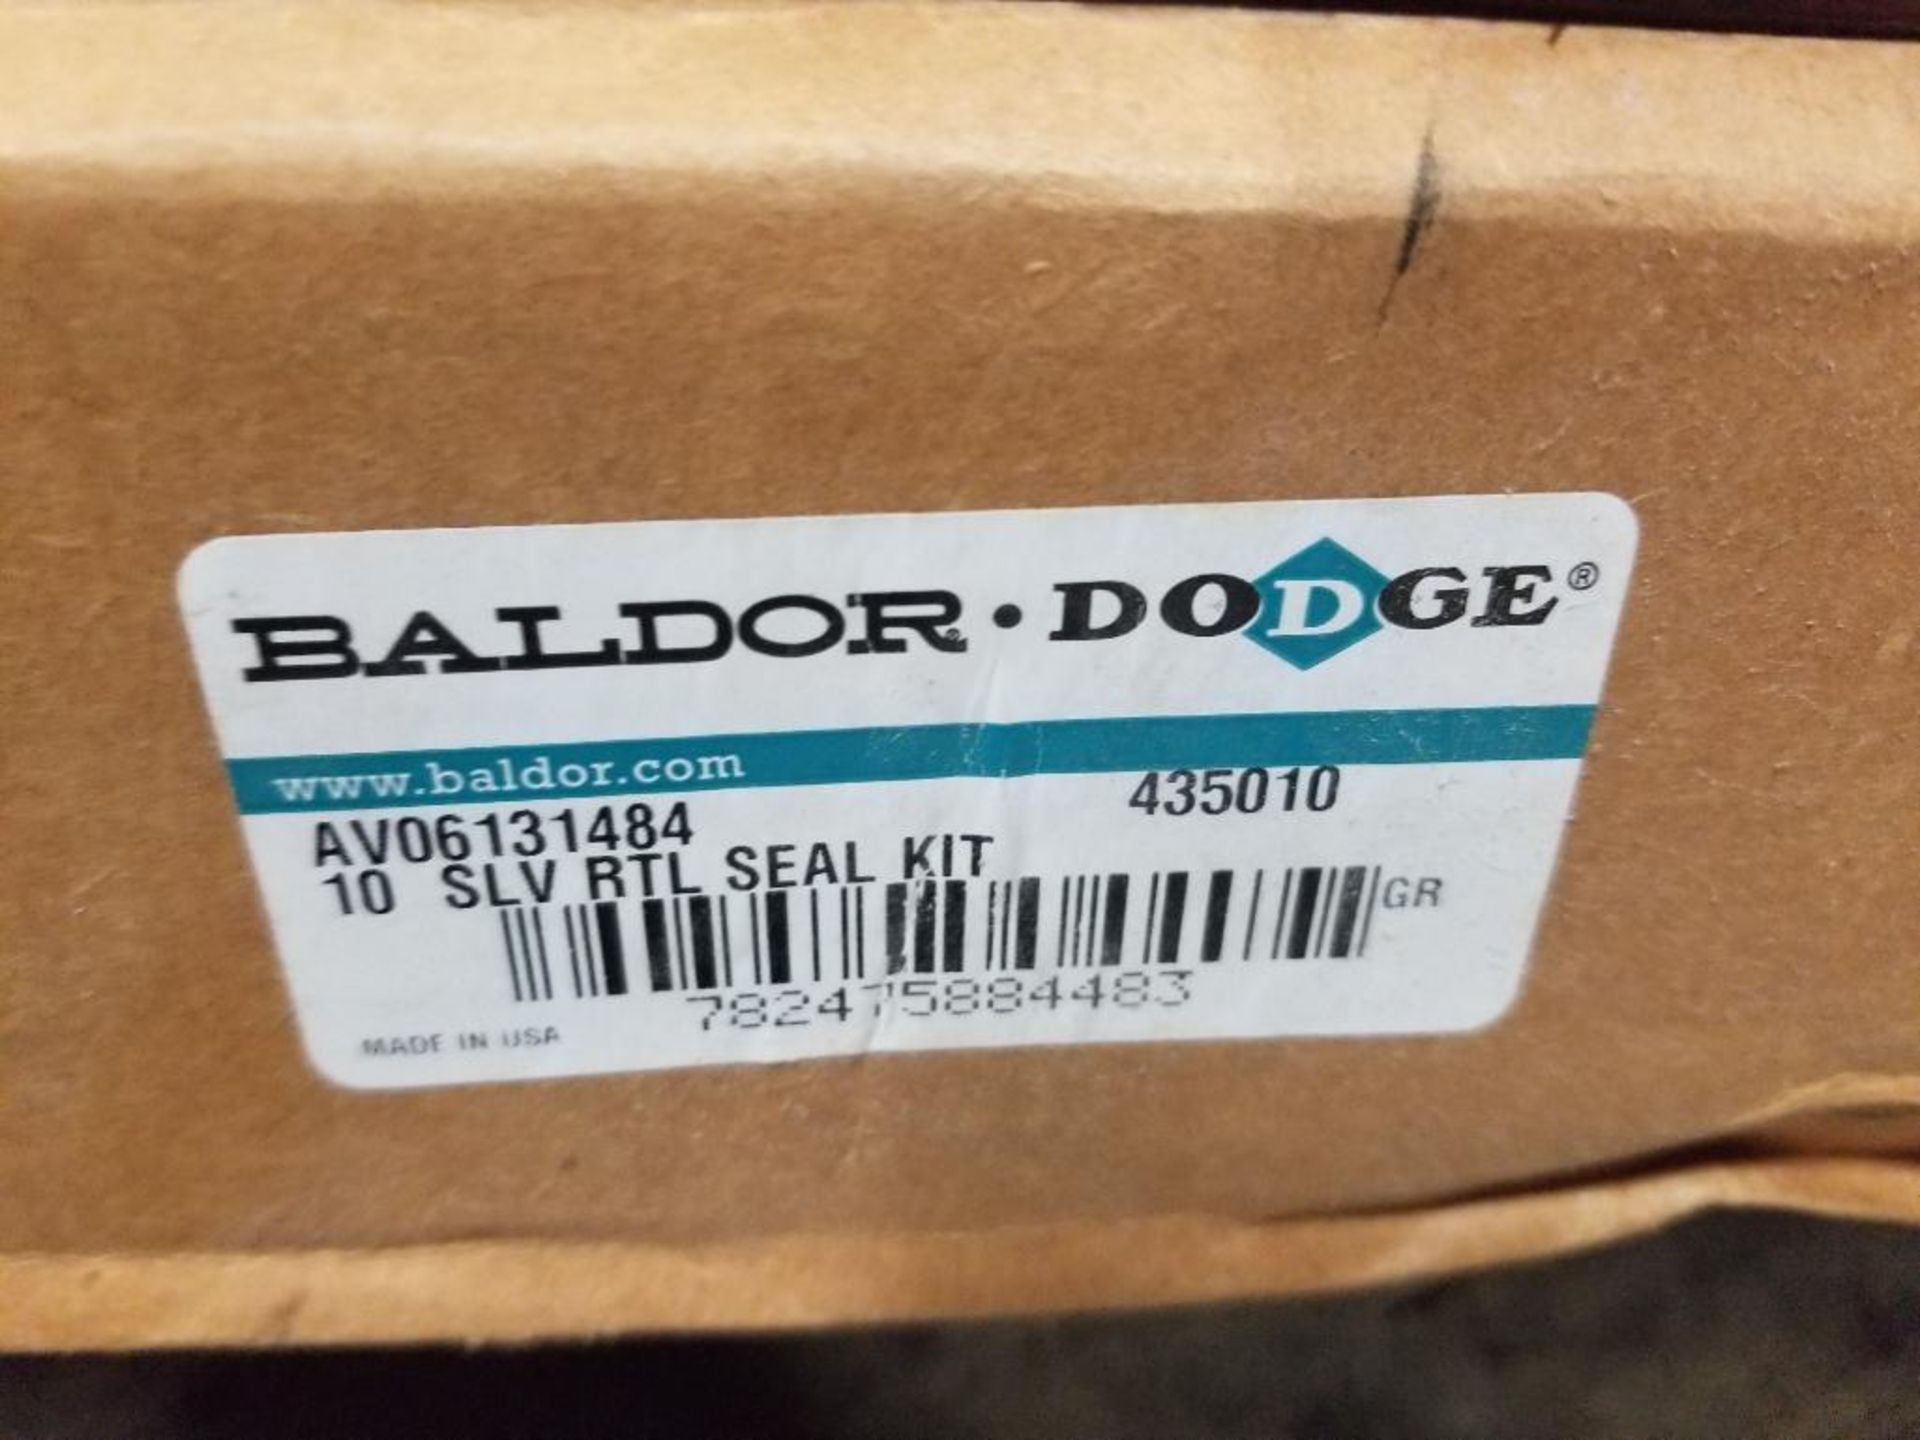 Baldor Dodge AV06131484 435010 seal kit. New in box. - Image 4 of 5